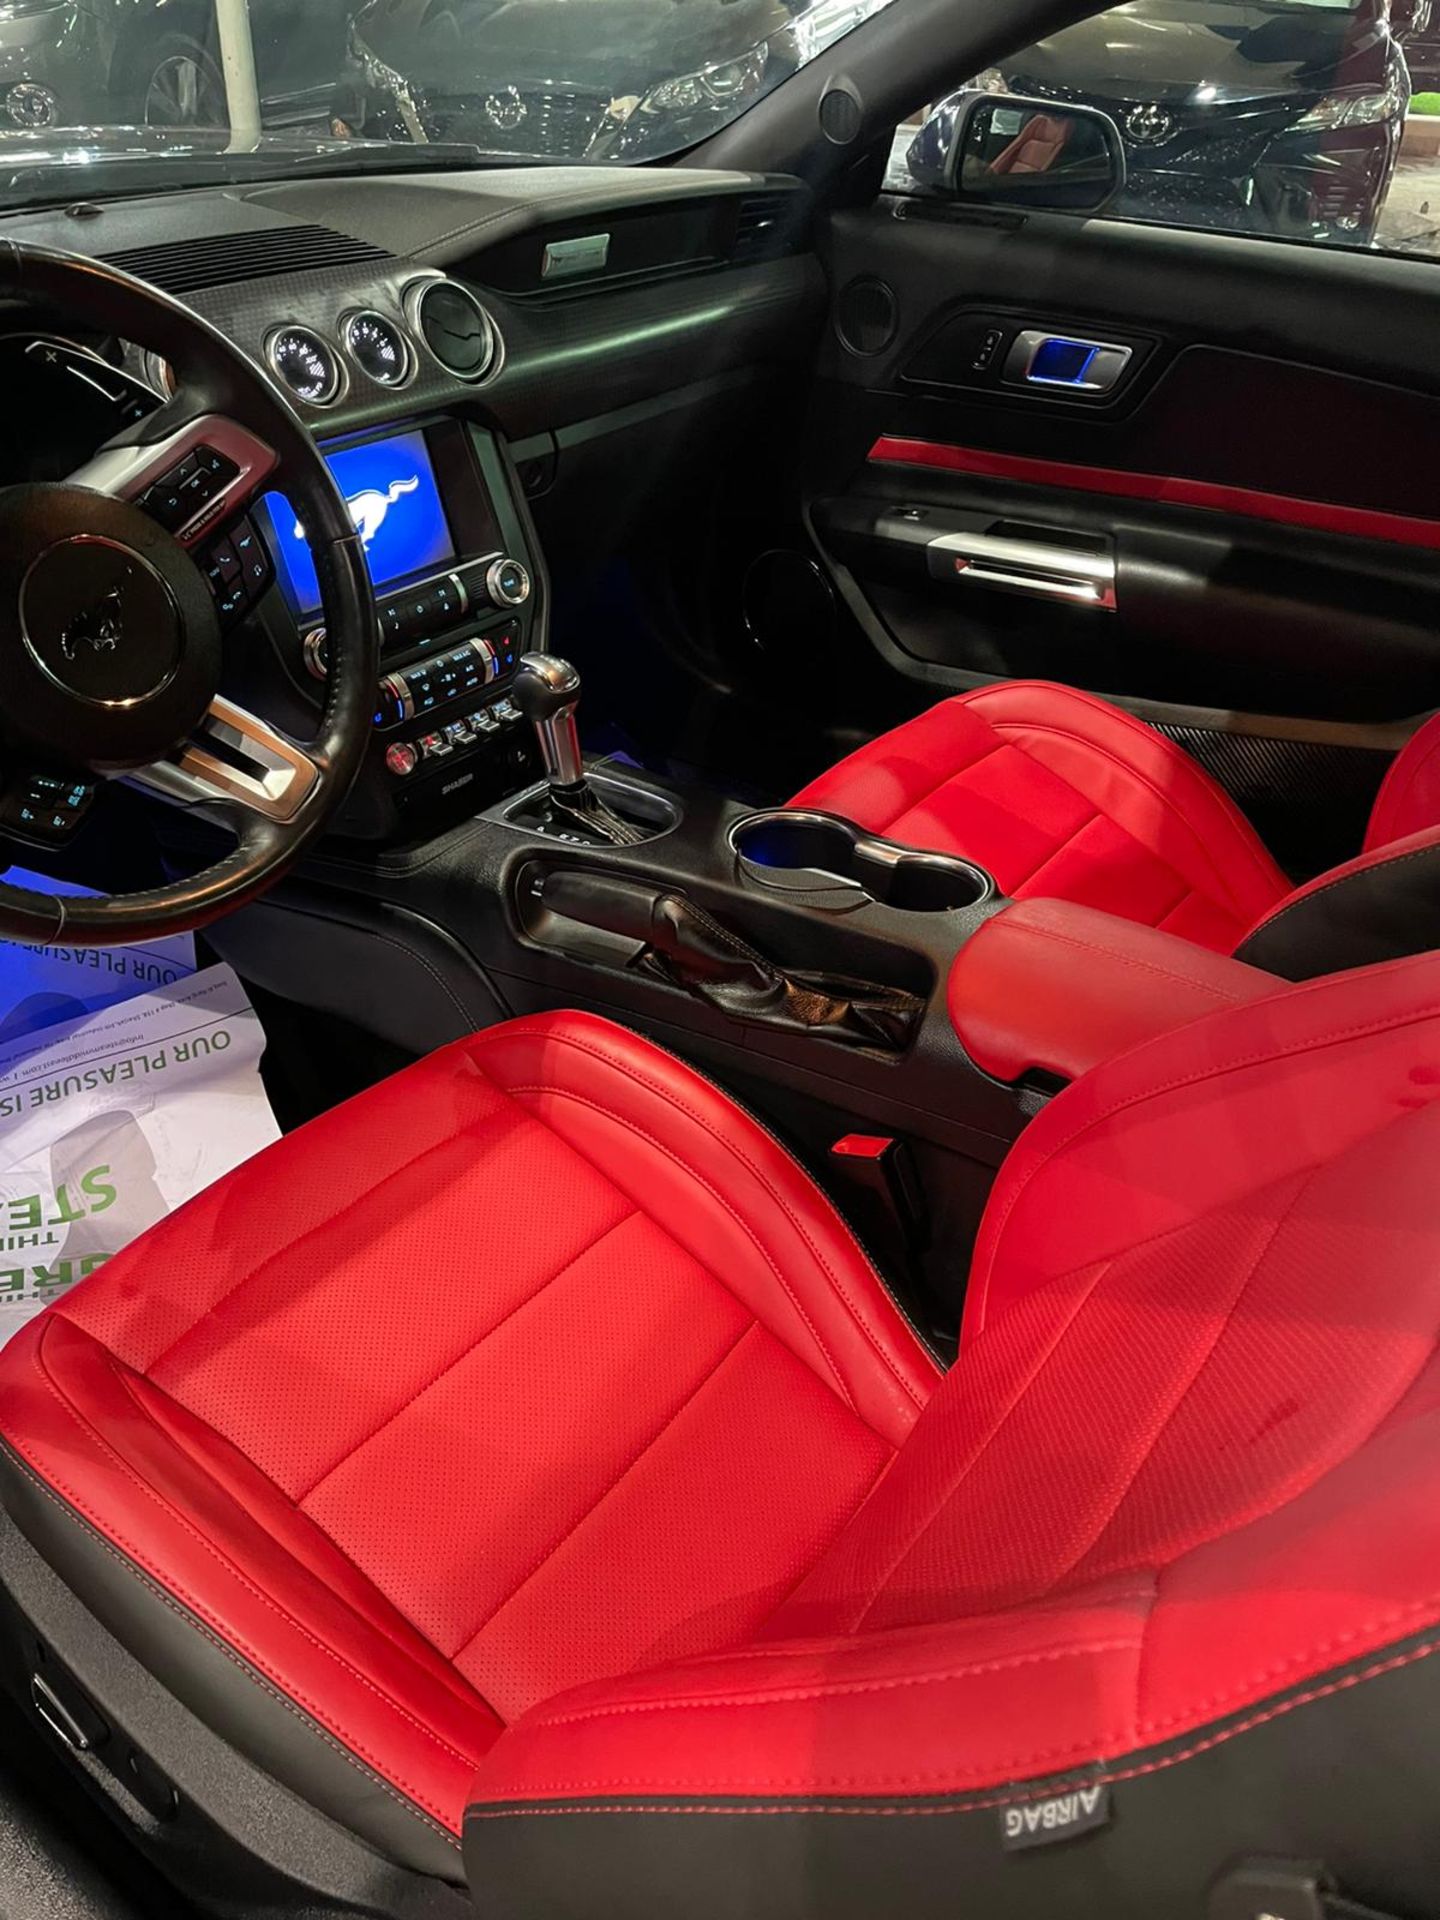 2019 mustang gt 5.0 V8 Shelby body kit 15,000 km. Uk mid APRIL With nova *PLUS VAT* - Image 9 of 9